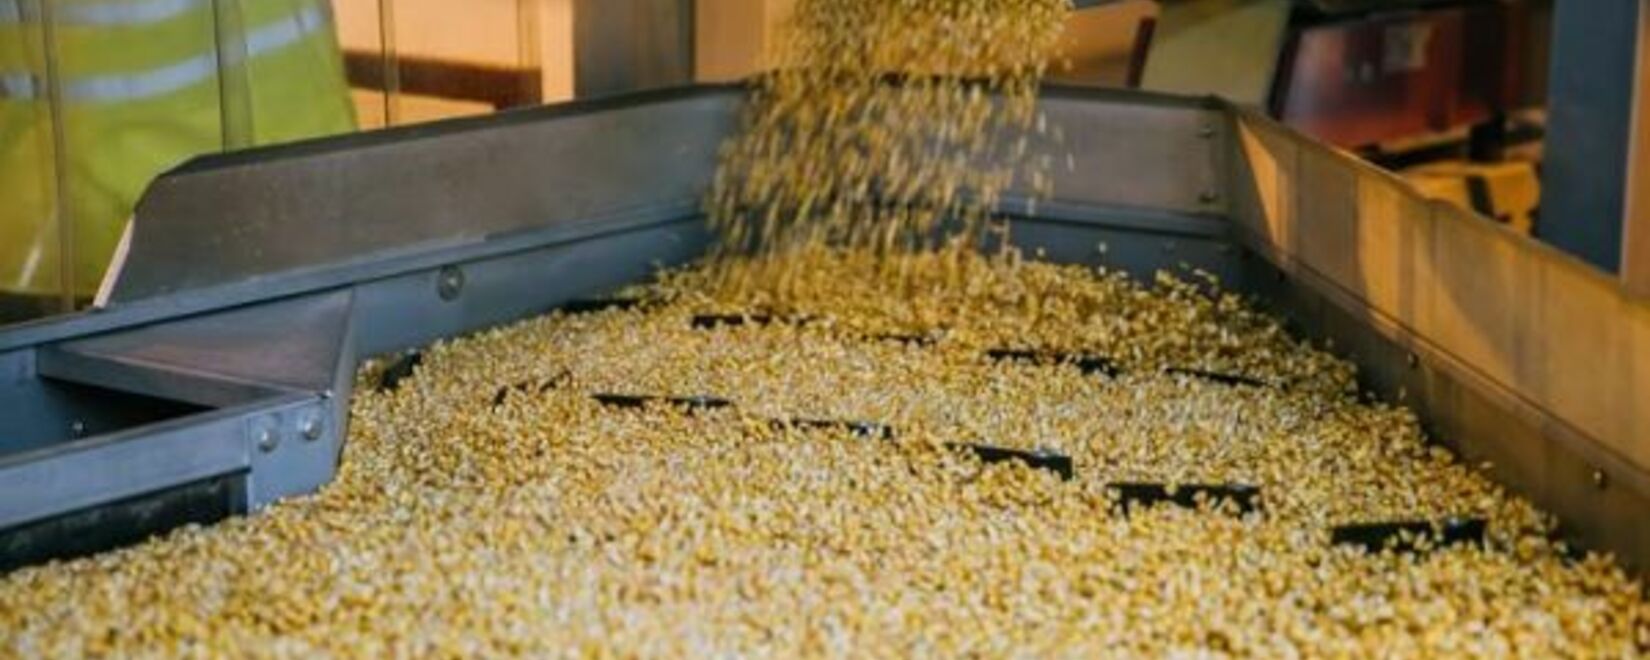 Цены на пшеницу и кукурузу снизились, на сою резко выросли во вторник